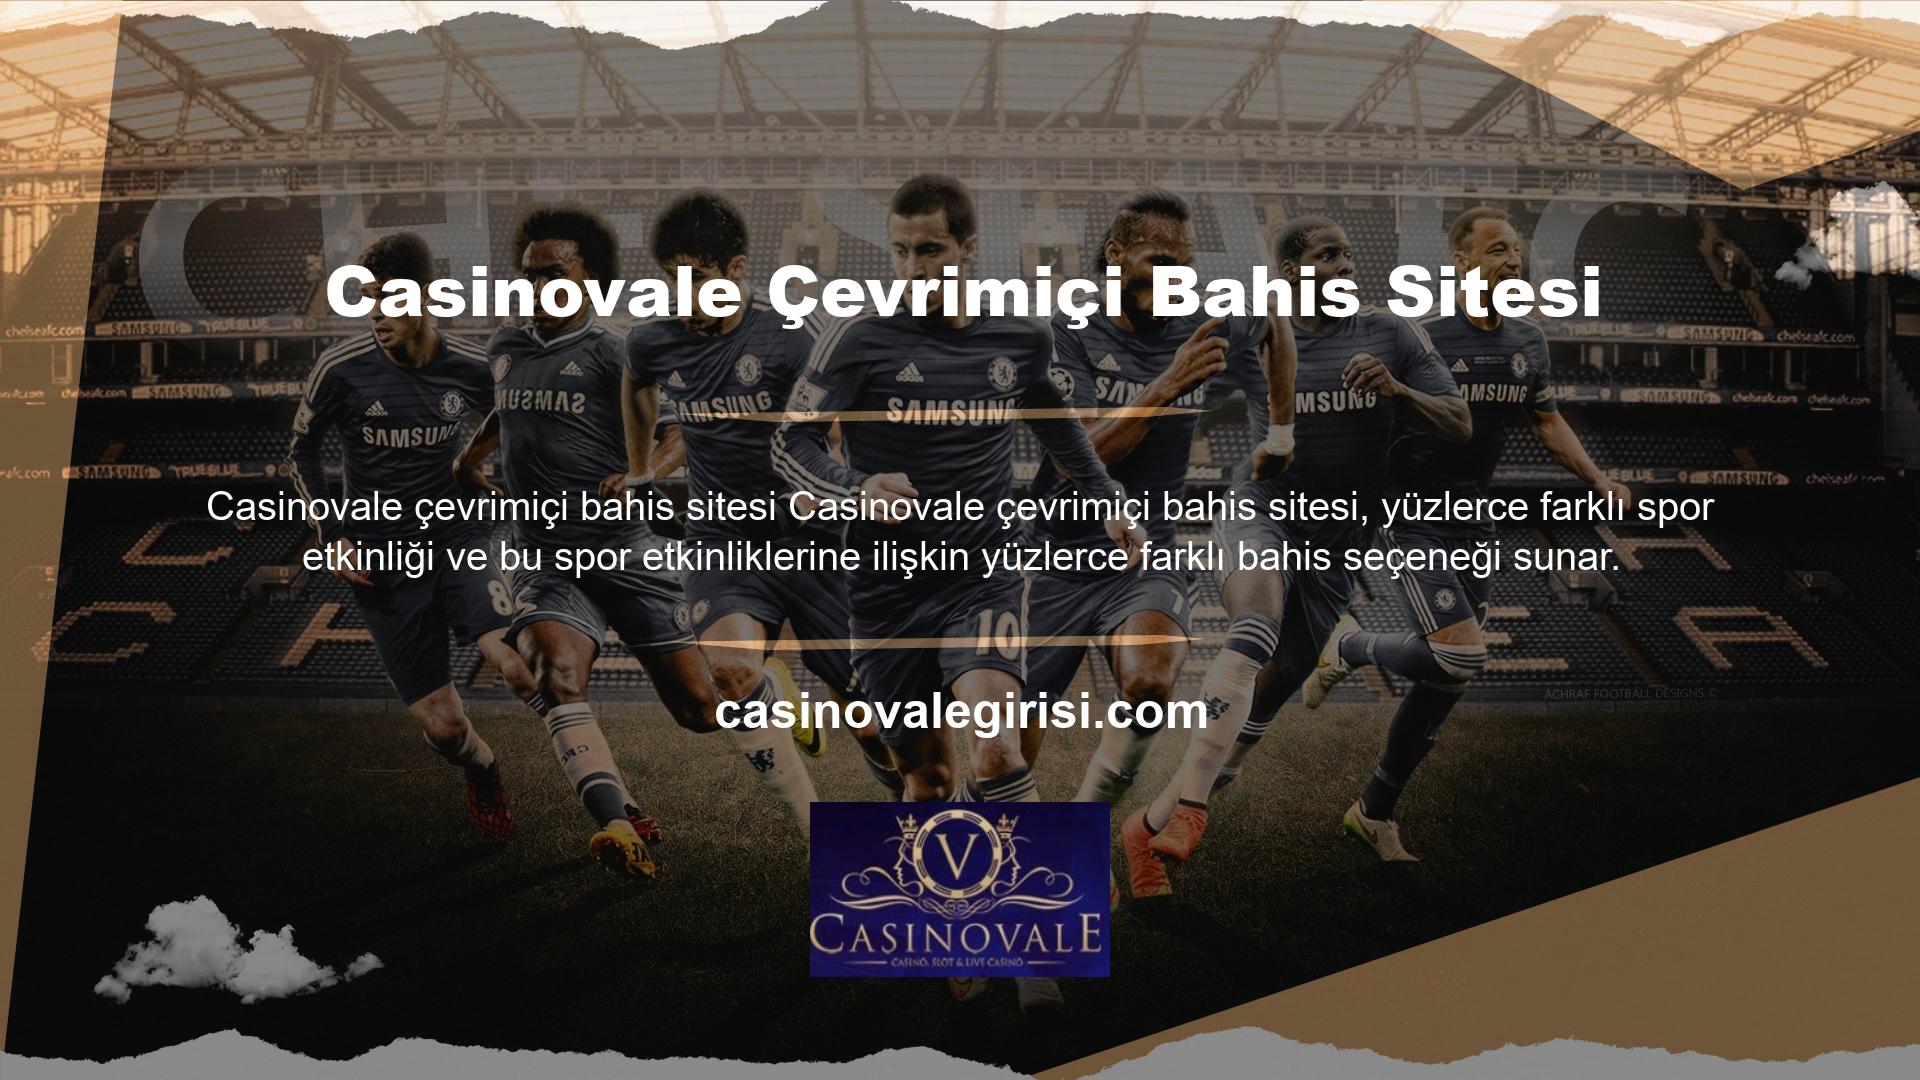 Casinovale online bahis sitesi geniş bir kullanıcı ağına sahiptir ve bu kullanıcılar tarafından yüksek puan almaktadır